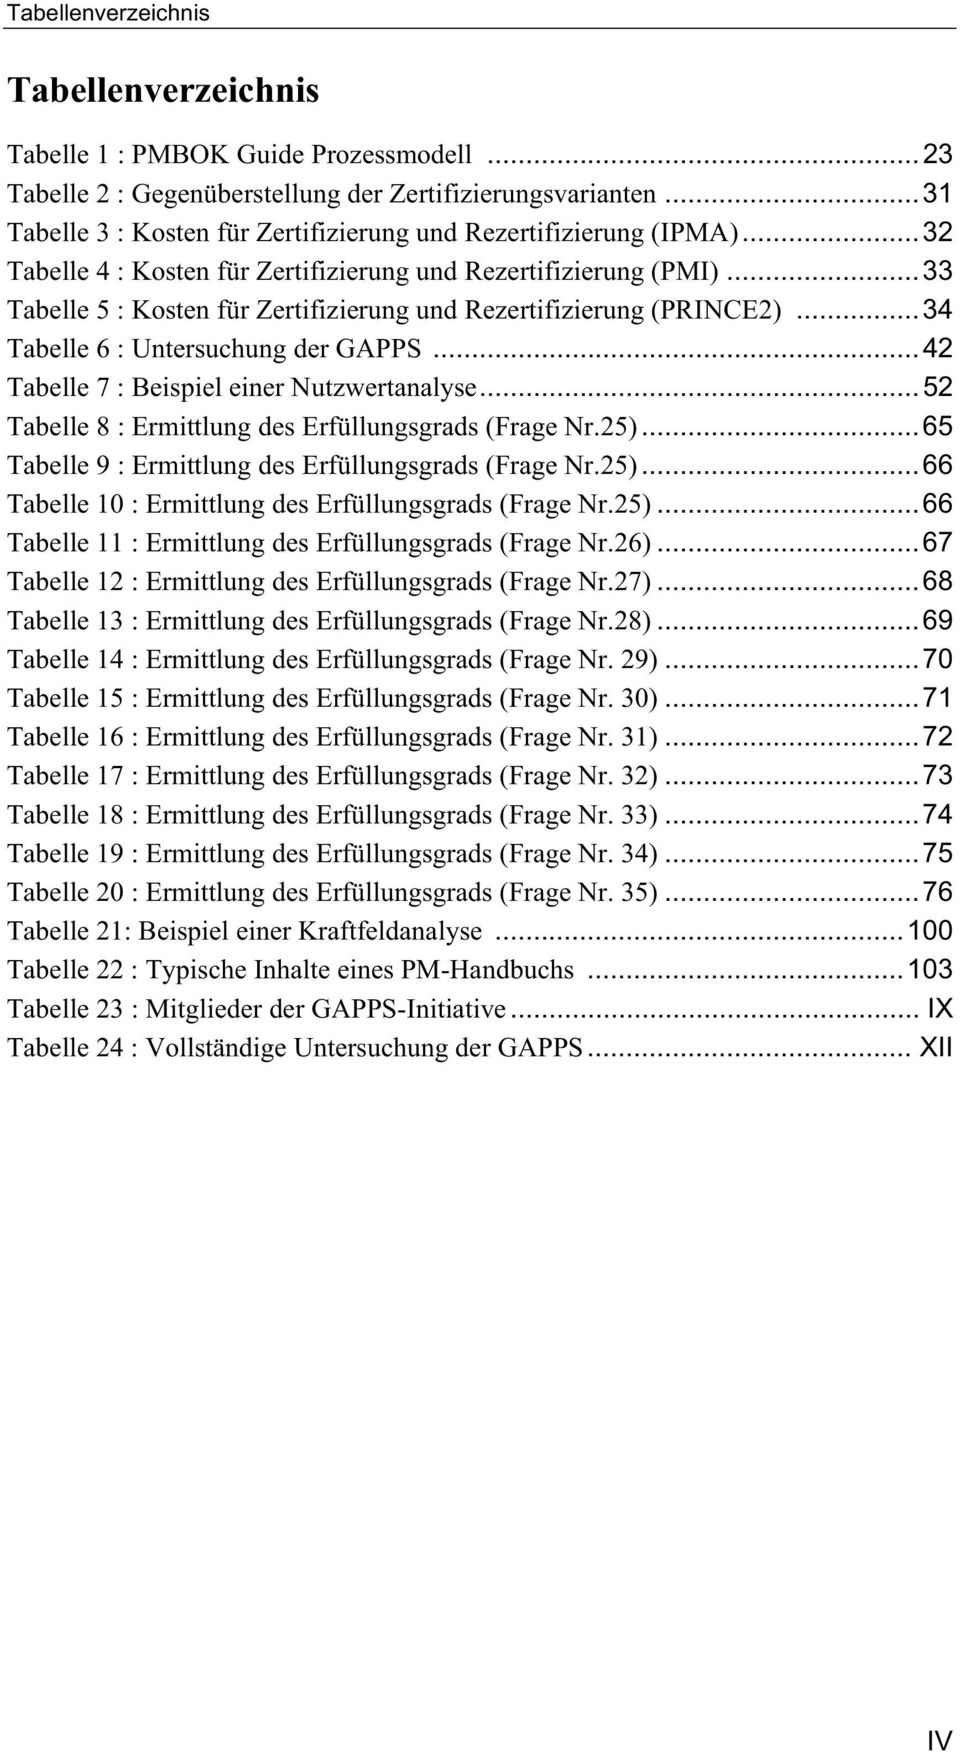 .. 33 Tabelle 5 : Kosten für Zertifizierung und Rezertifizierung (PRINCE2)... 34 Tabelle 6 : Untersuchung der GAPPS... 42 Tabelle 7 : Beispiel einer Nutzwertanalyse.